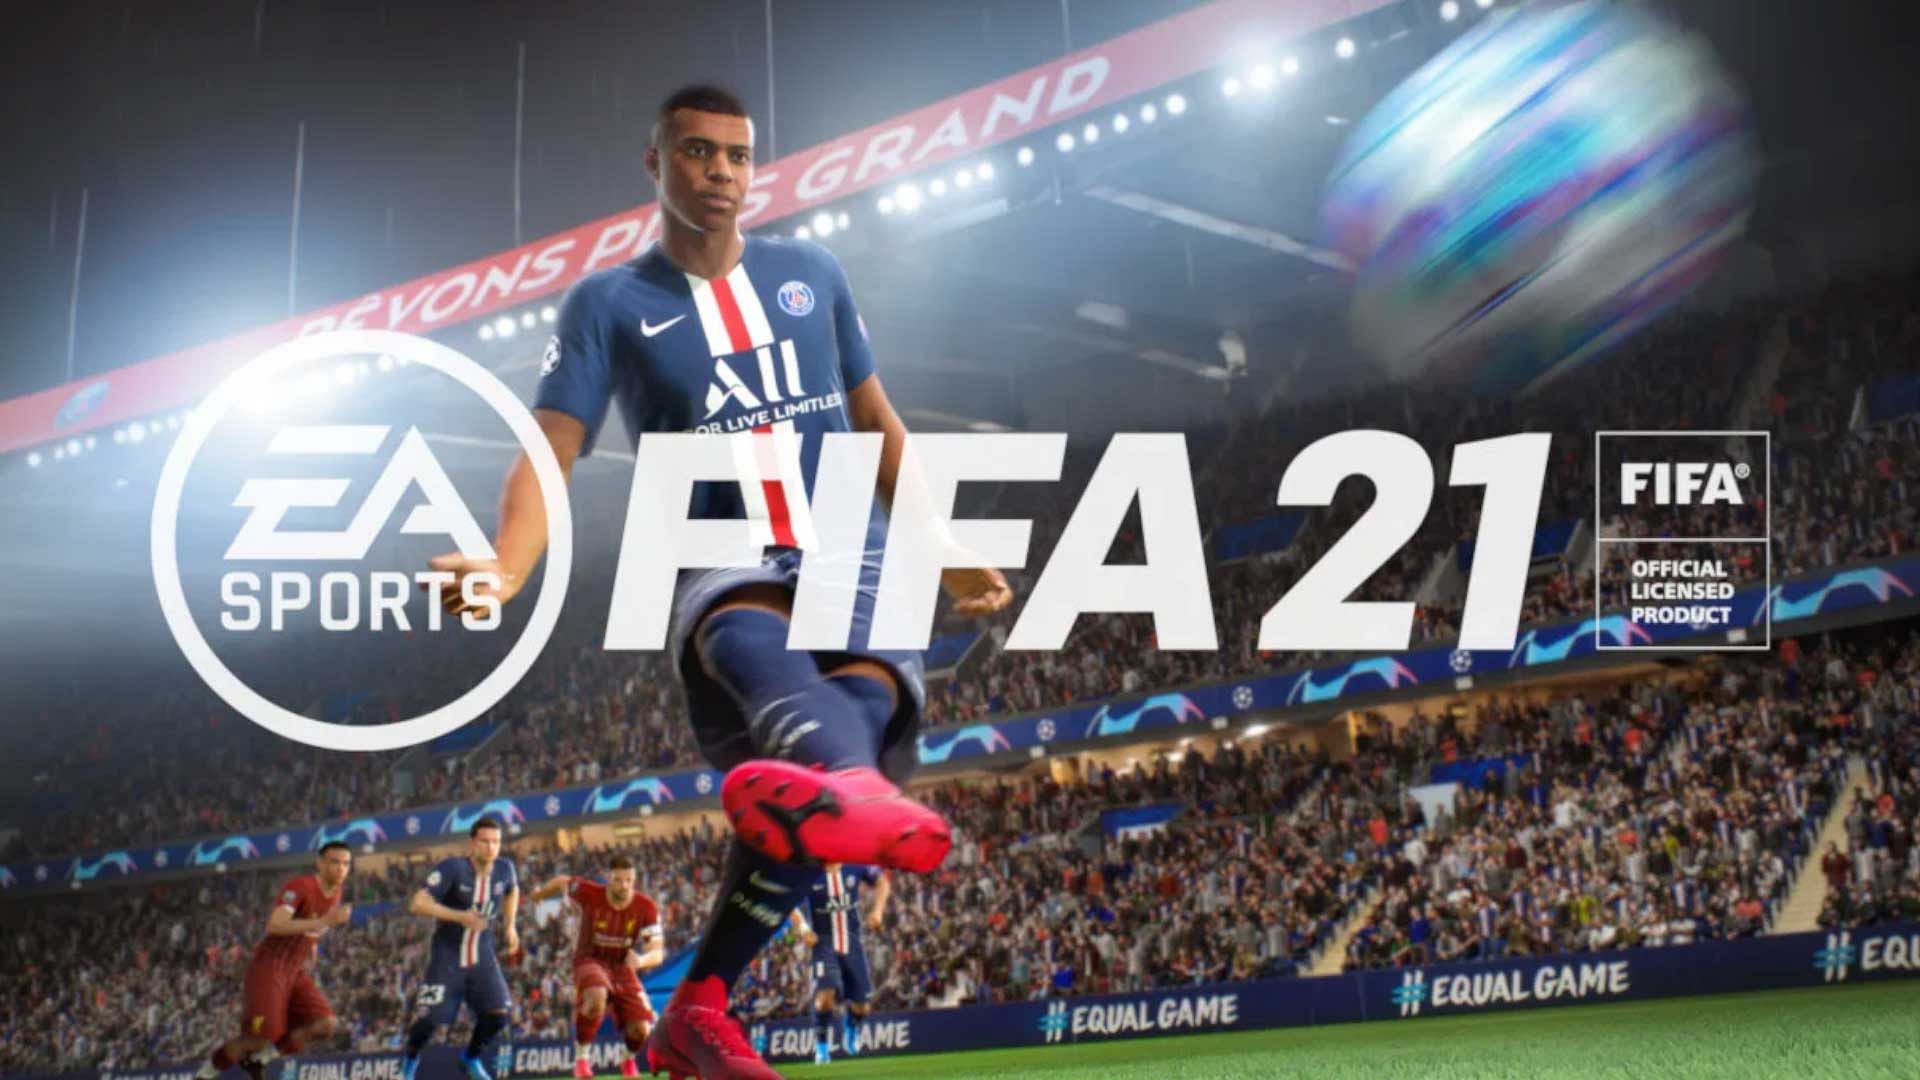 schoorsteen heilig aardolie FIFA 21 Review: Gameplay, Tricks, Tips & More